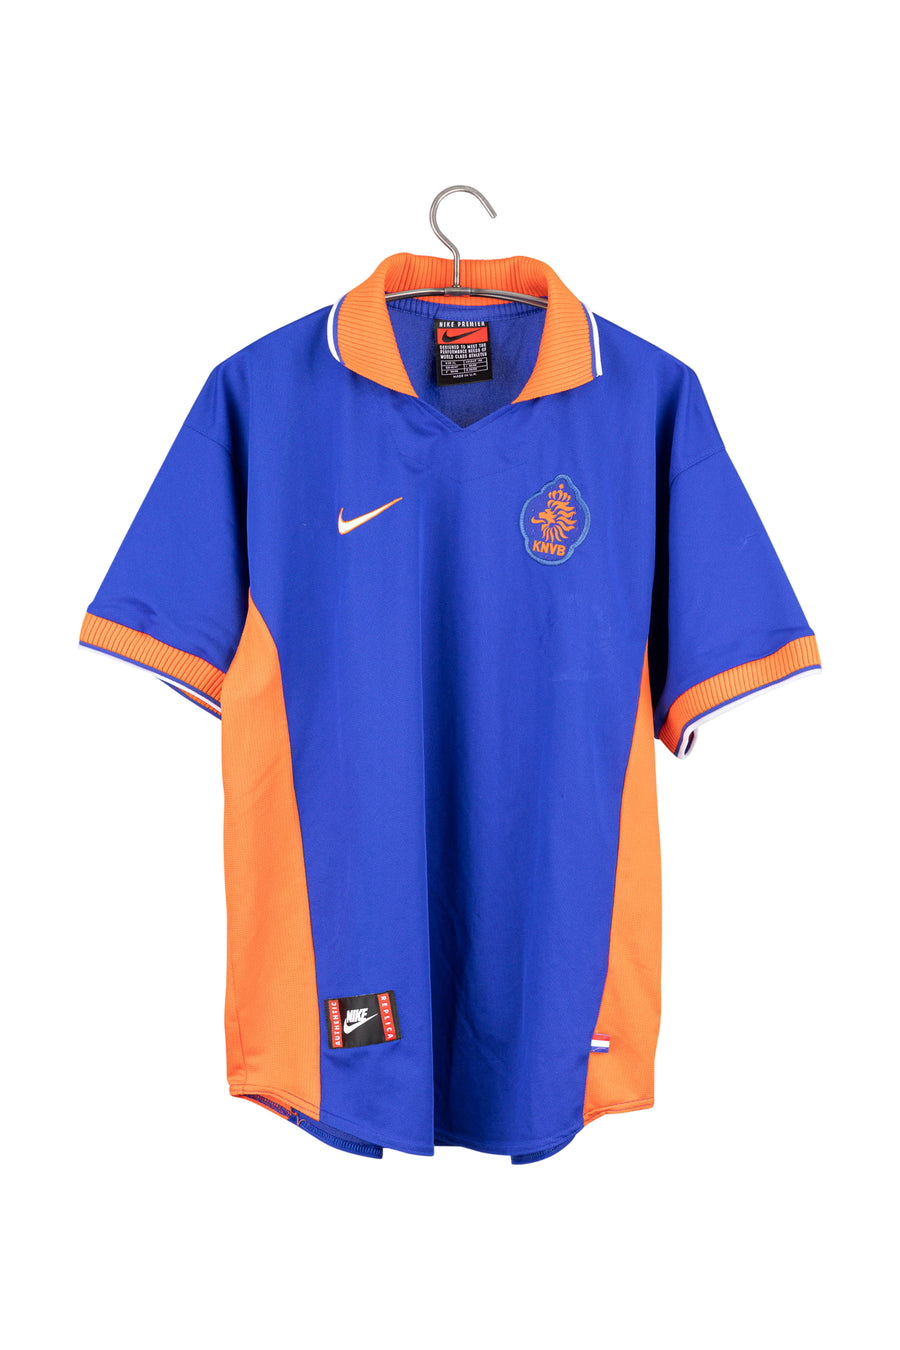 Netherlands 1997 - 1998 Away Football Shirt